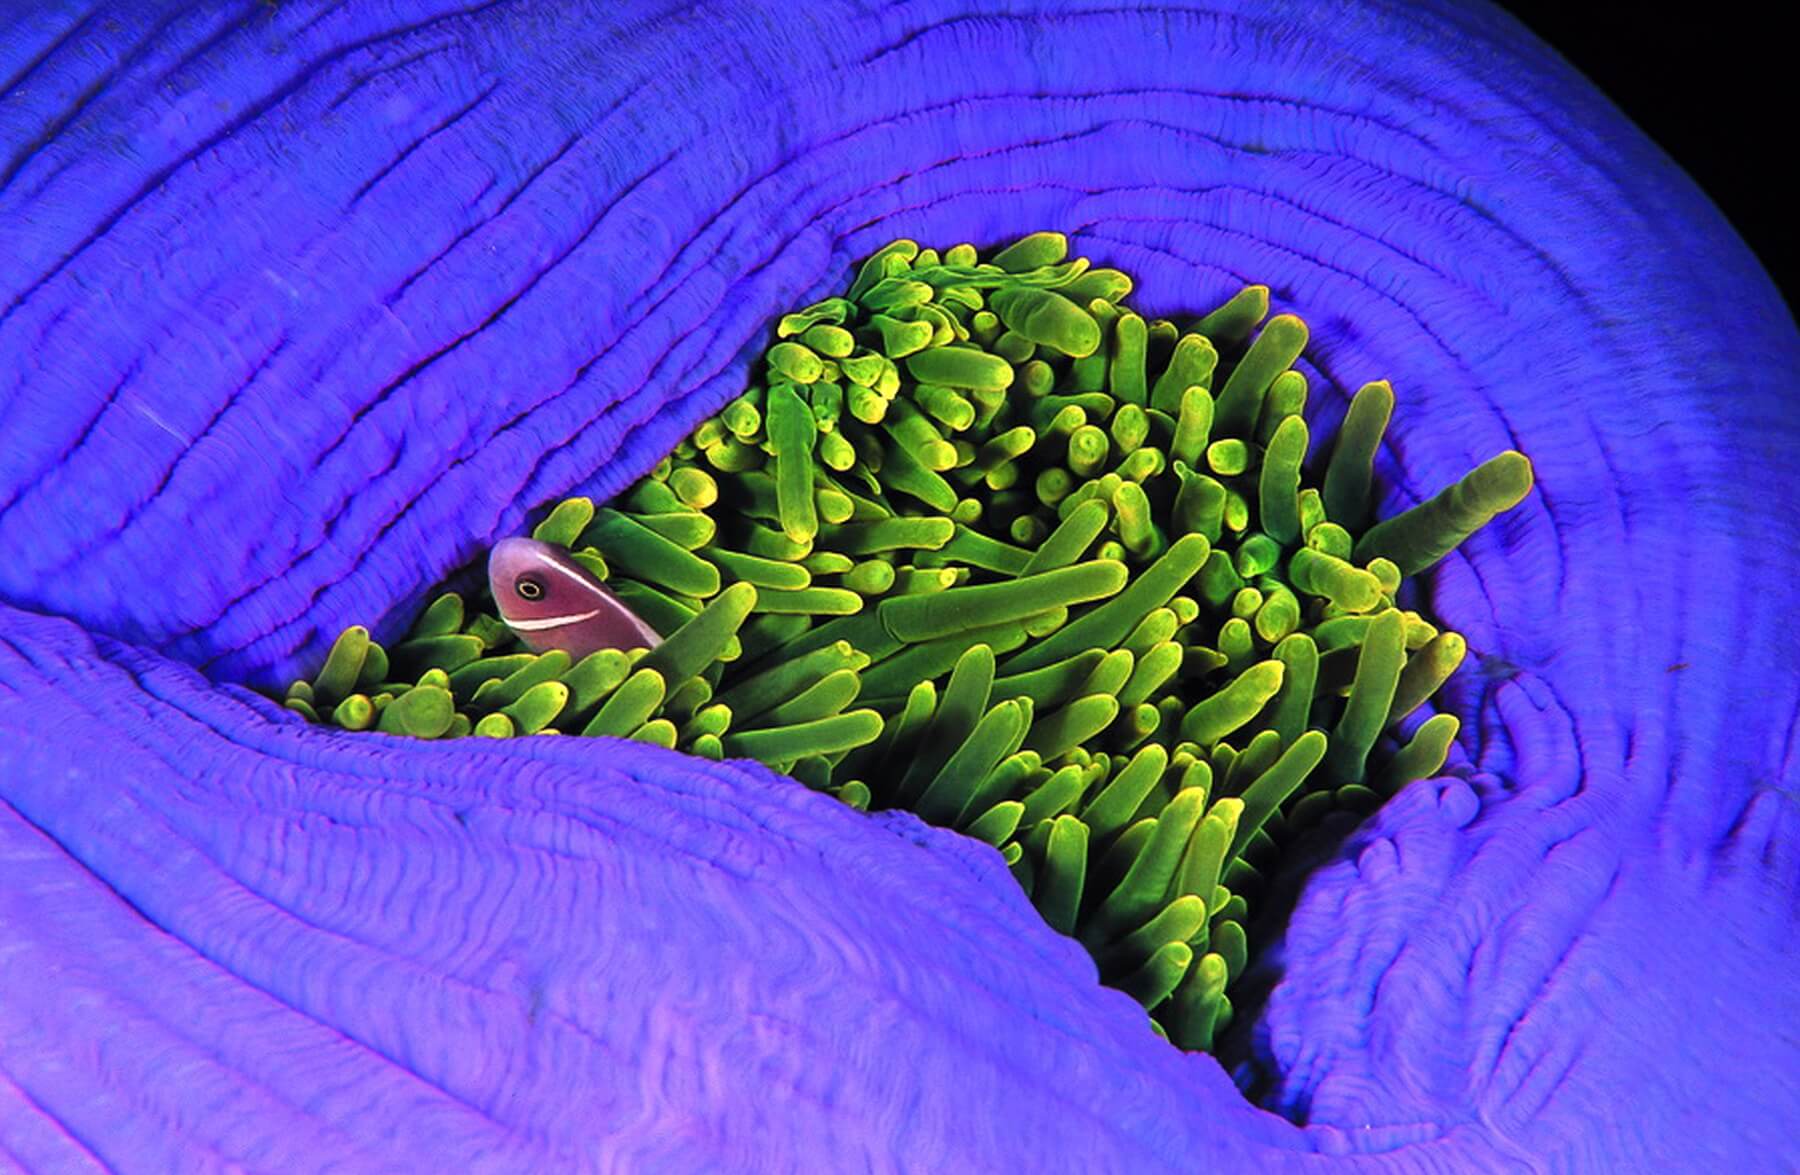 Kleinere Fische finden oft in den Tentakeln von Seeanemonen Schutz vor Feinden.